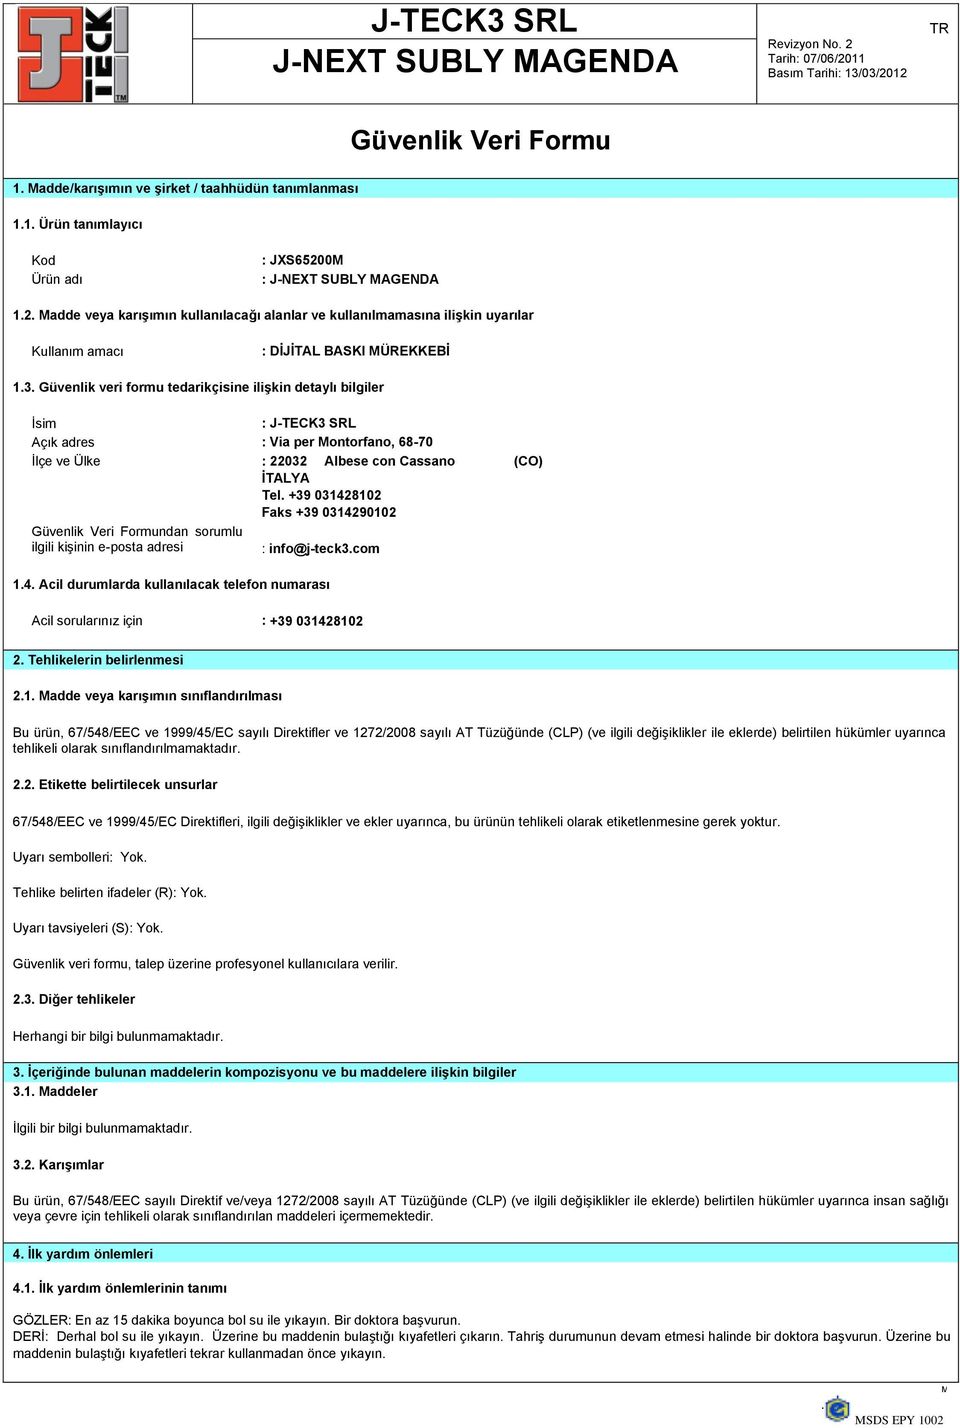 Güvenlik veri formu tedarikçisine ilişkin detaylı bilgiler İsim : J-TECK3 SRL Açık adres : Via per Montorfano, 68-70 İlçe ve Ülke : 22032 Albese con Cassano (CO) İTALYA Tel.